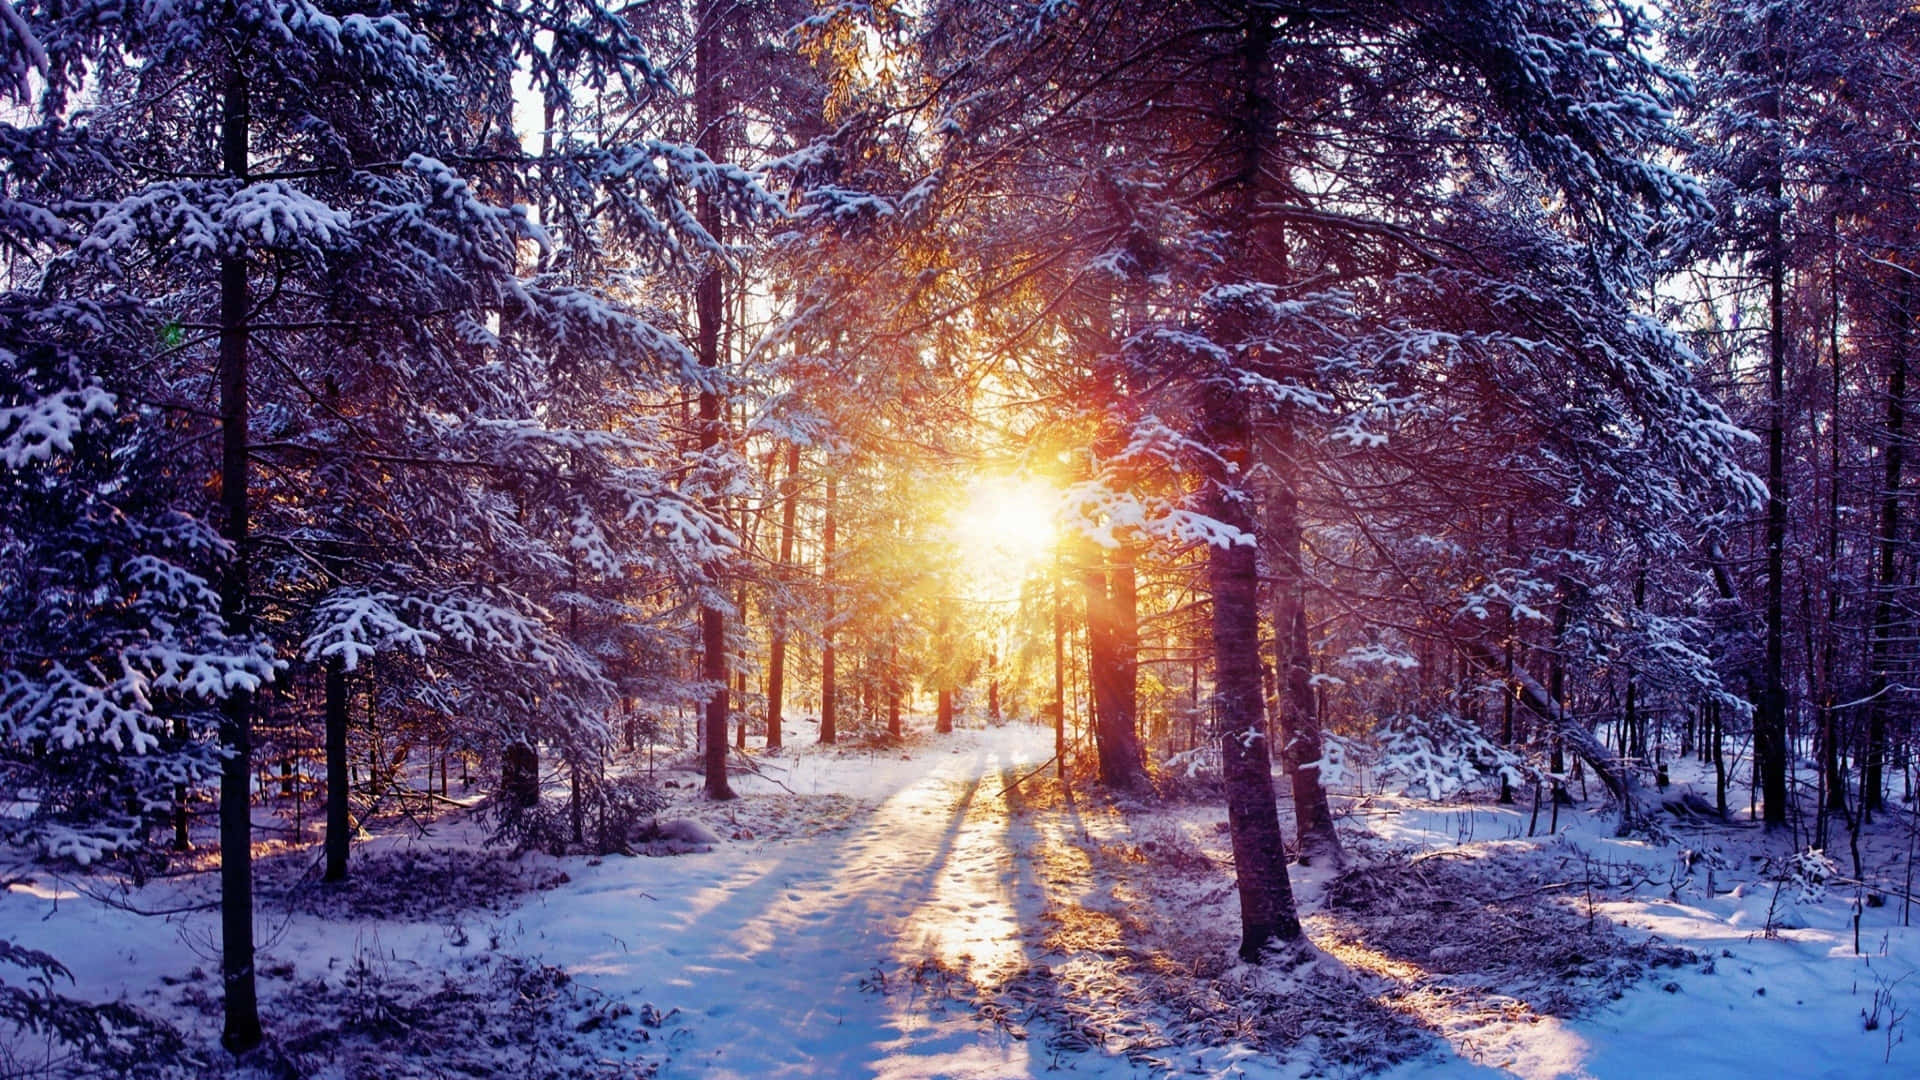 Unadelle Migliori Scene Invernali; La Neve Bianca Ricopre Le Colline Lontane.